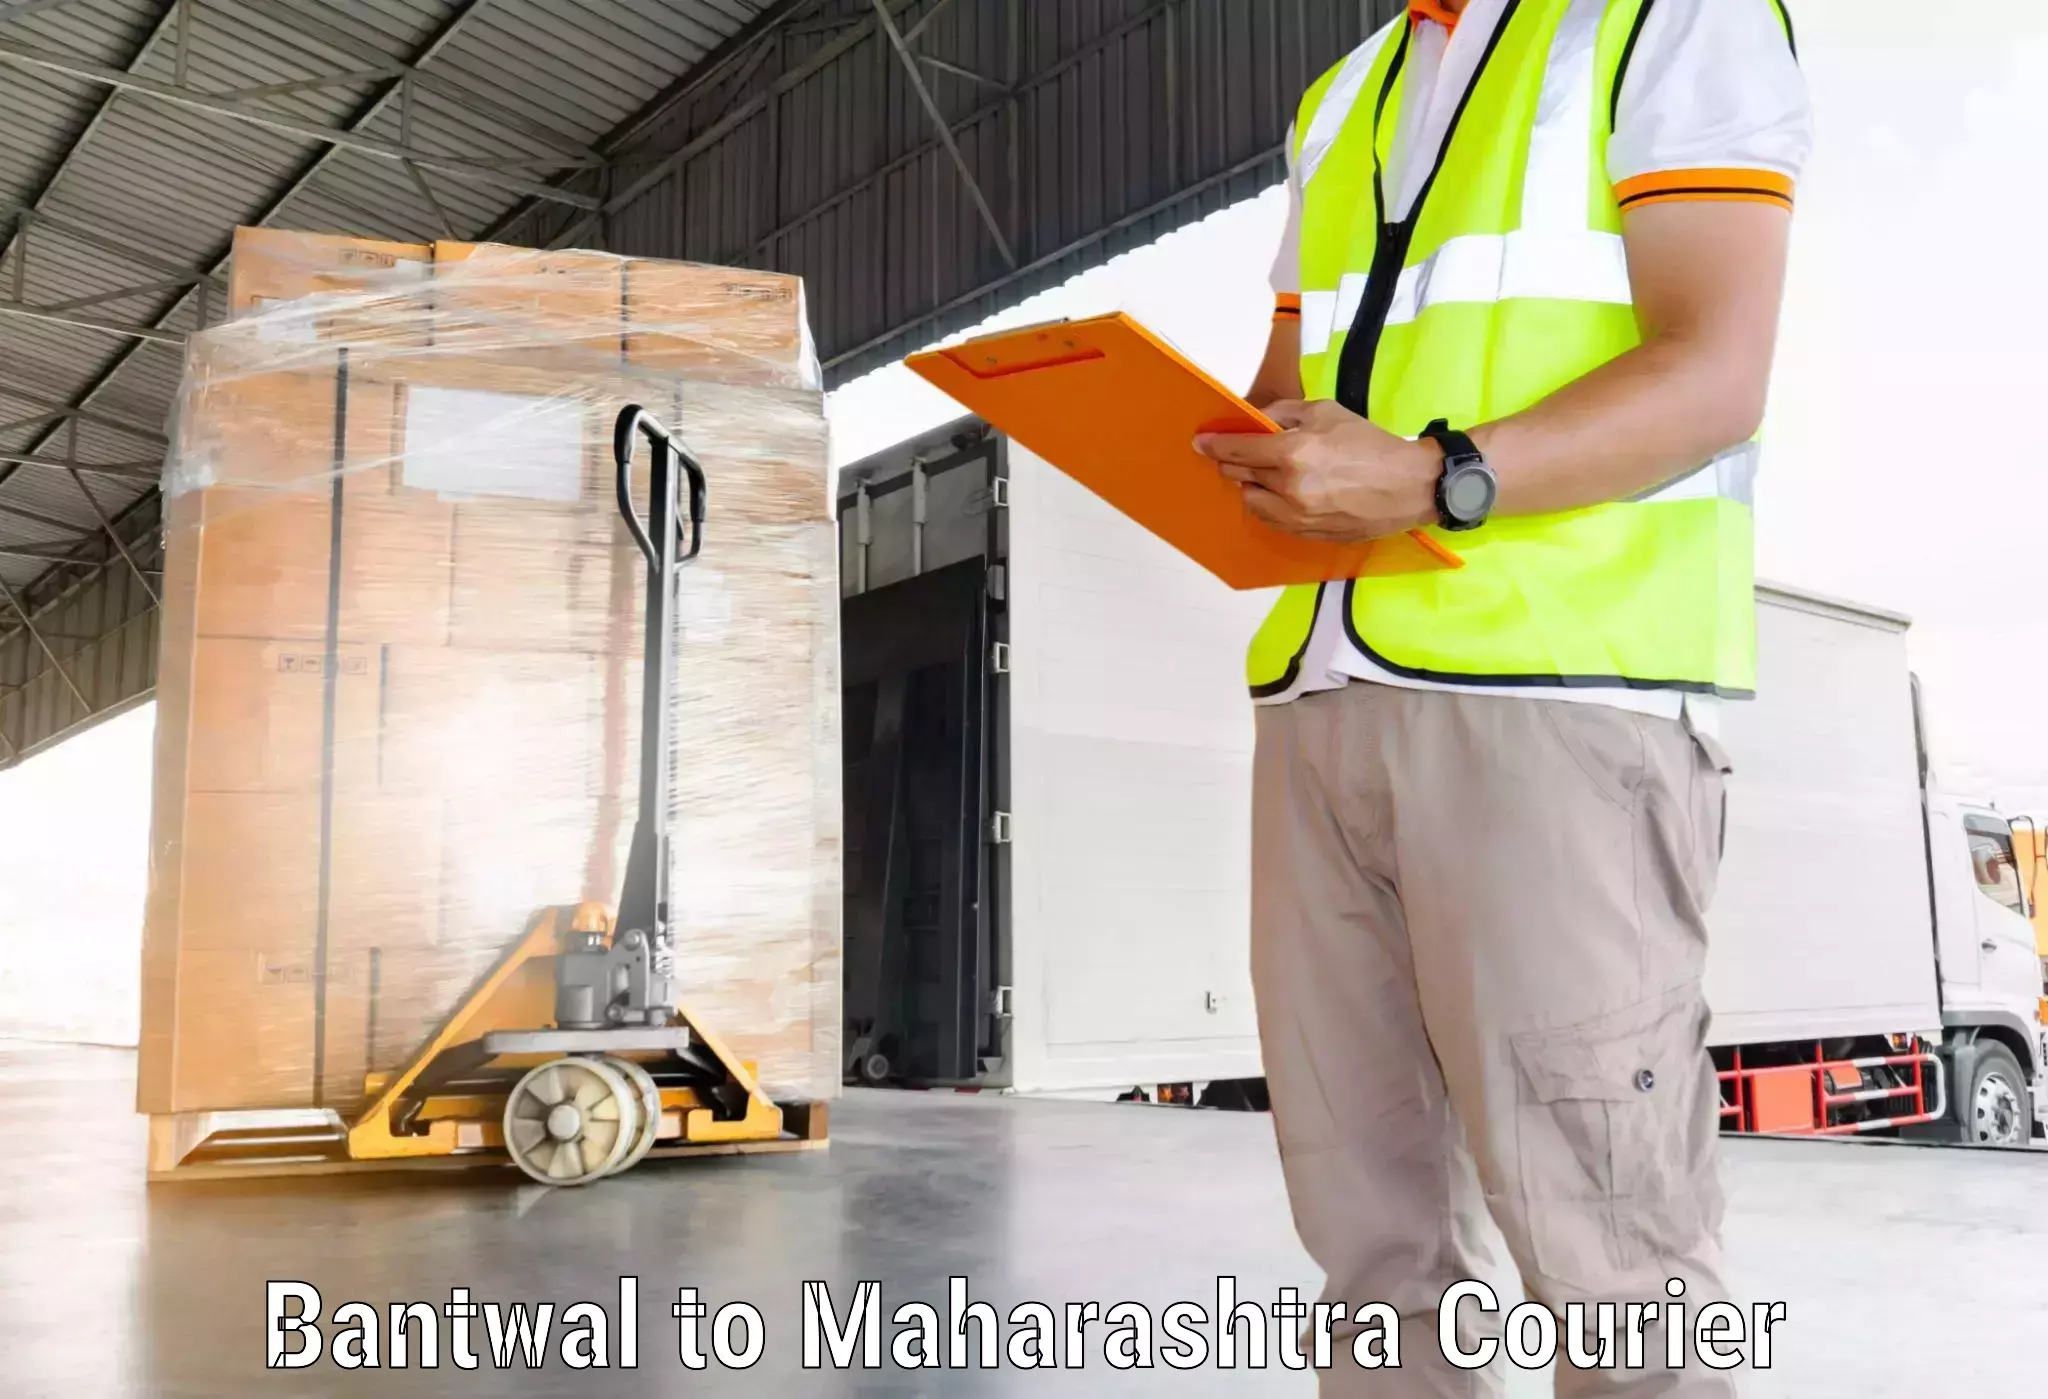 International parcel service Bantwal to Jamkhed